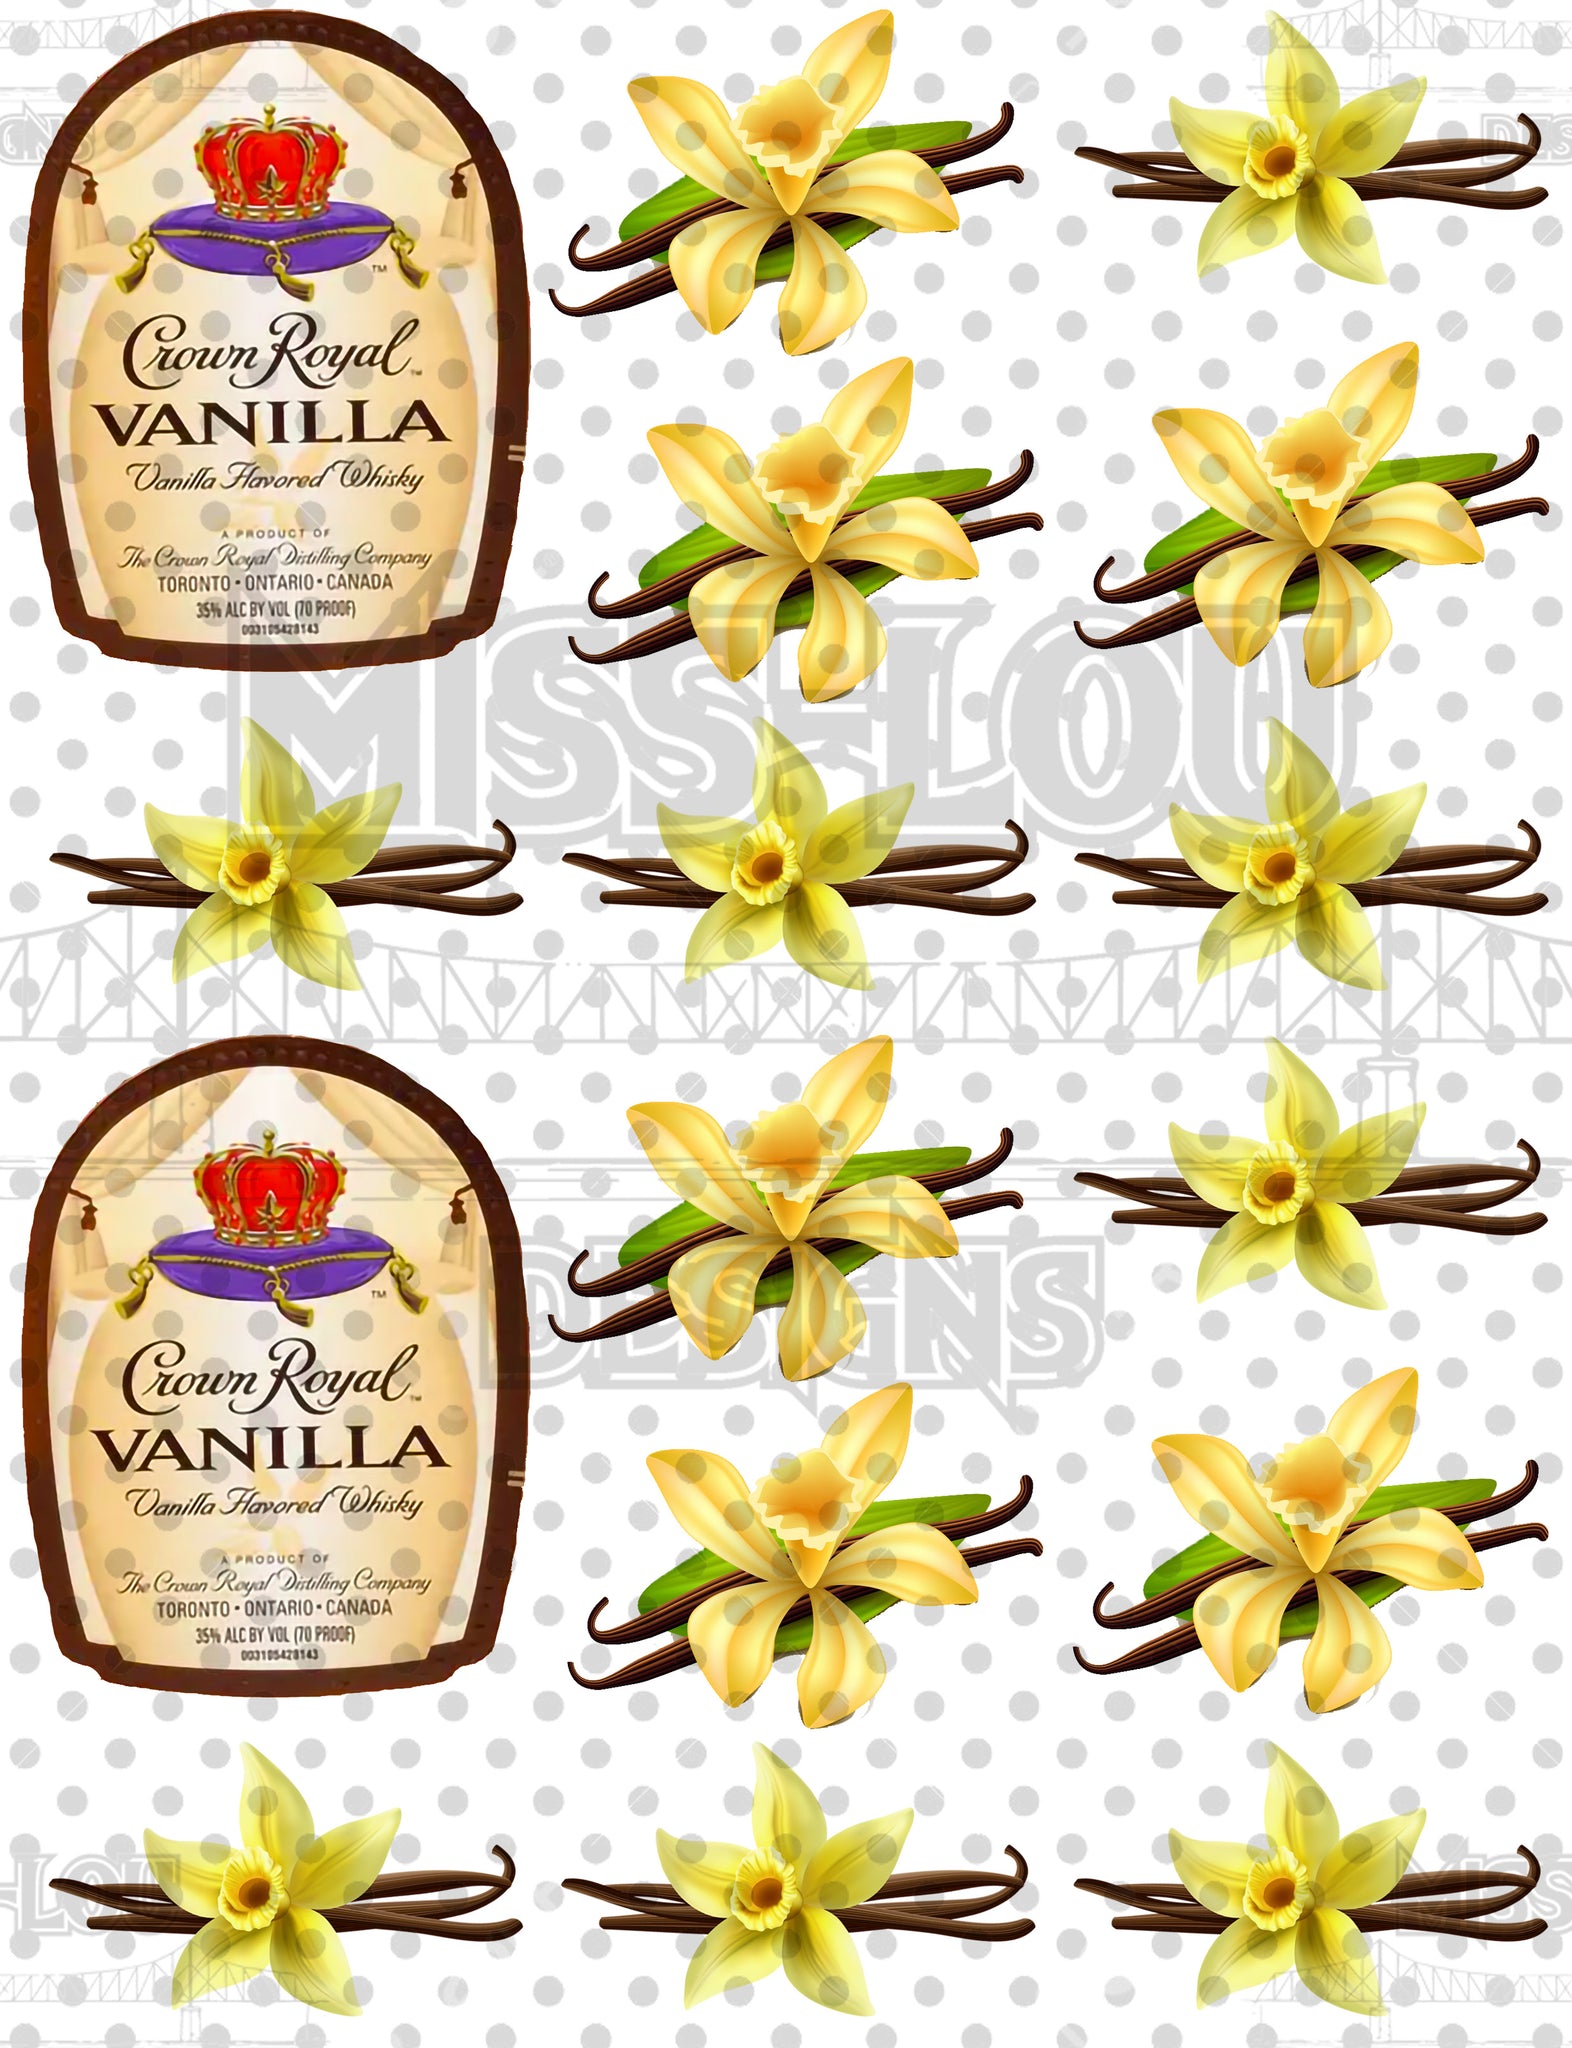 Crown Royal Vanilla Half Sheet Exclusive Waterslide Miss Lou Designs More